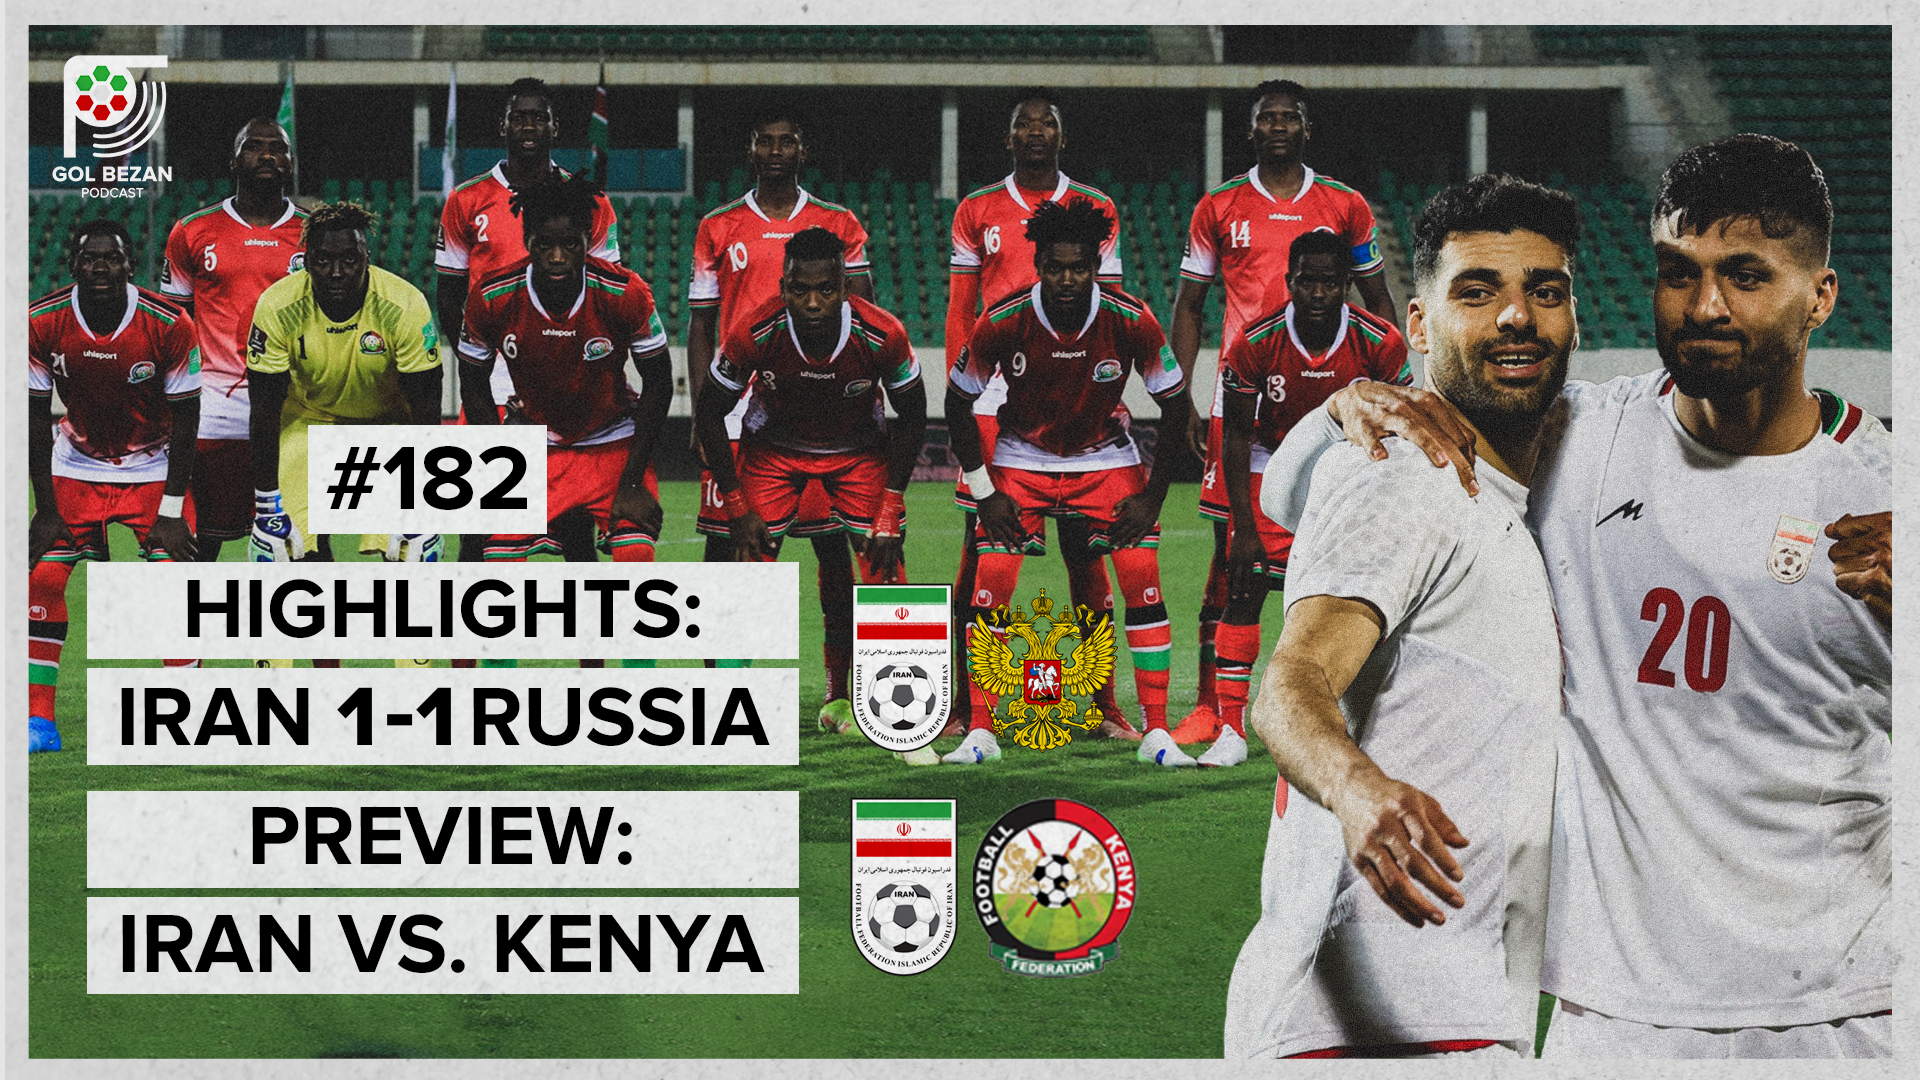 Highlights: Iran 1 - 1 Russia | Preview: Iran vs. Kenya